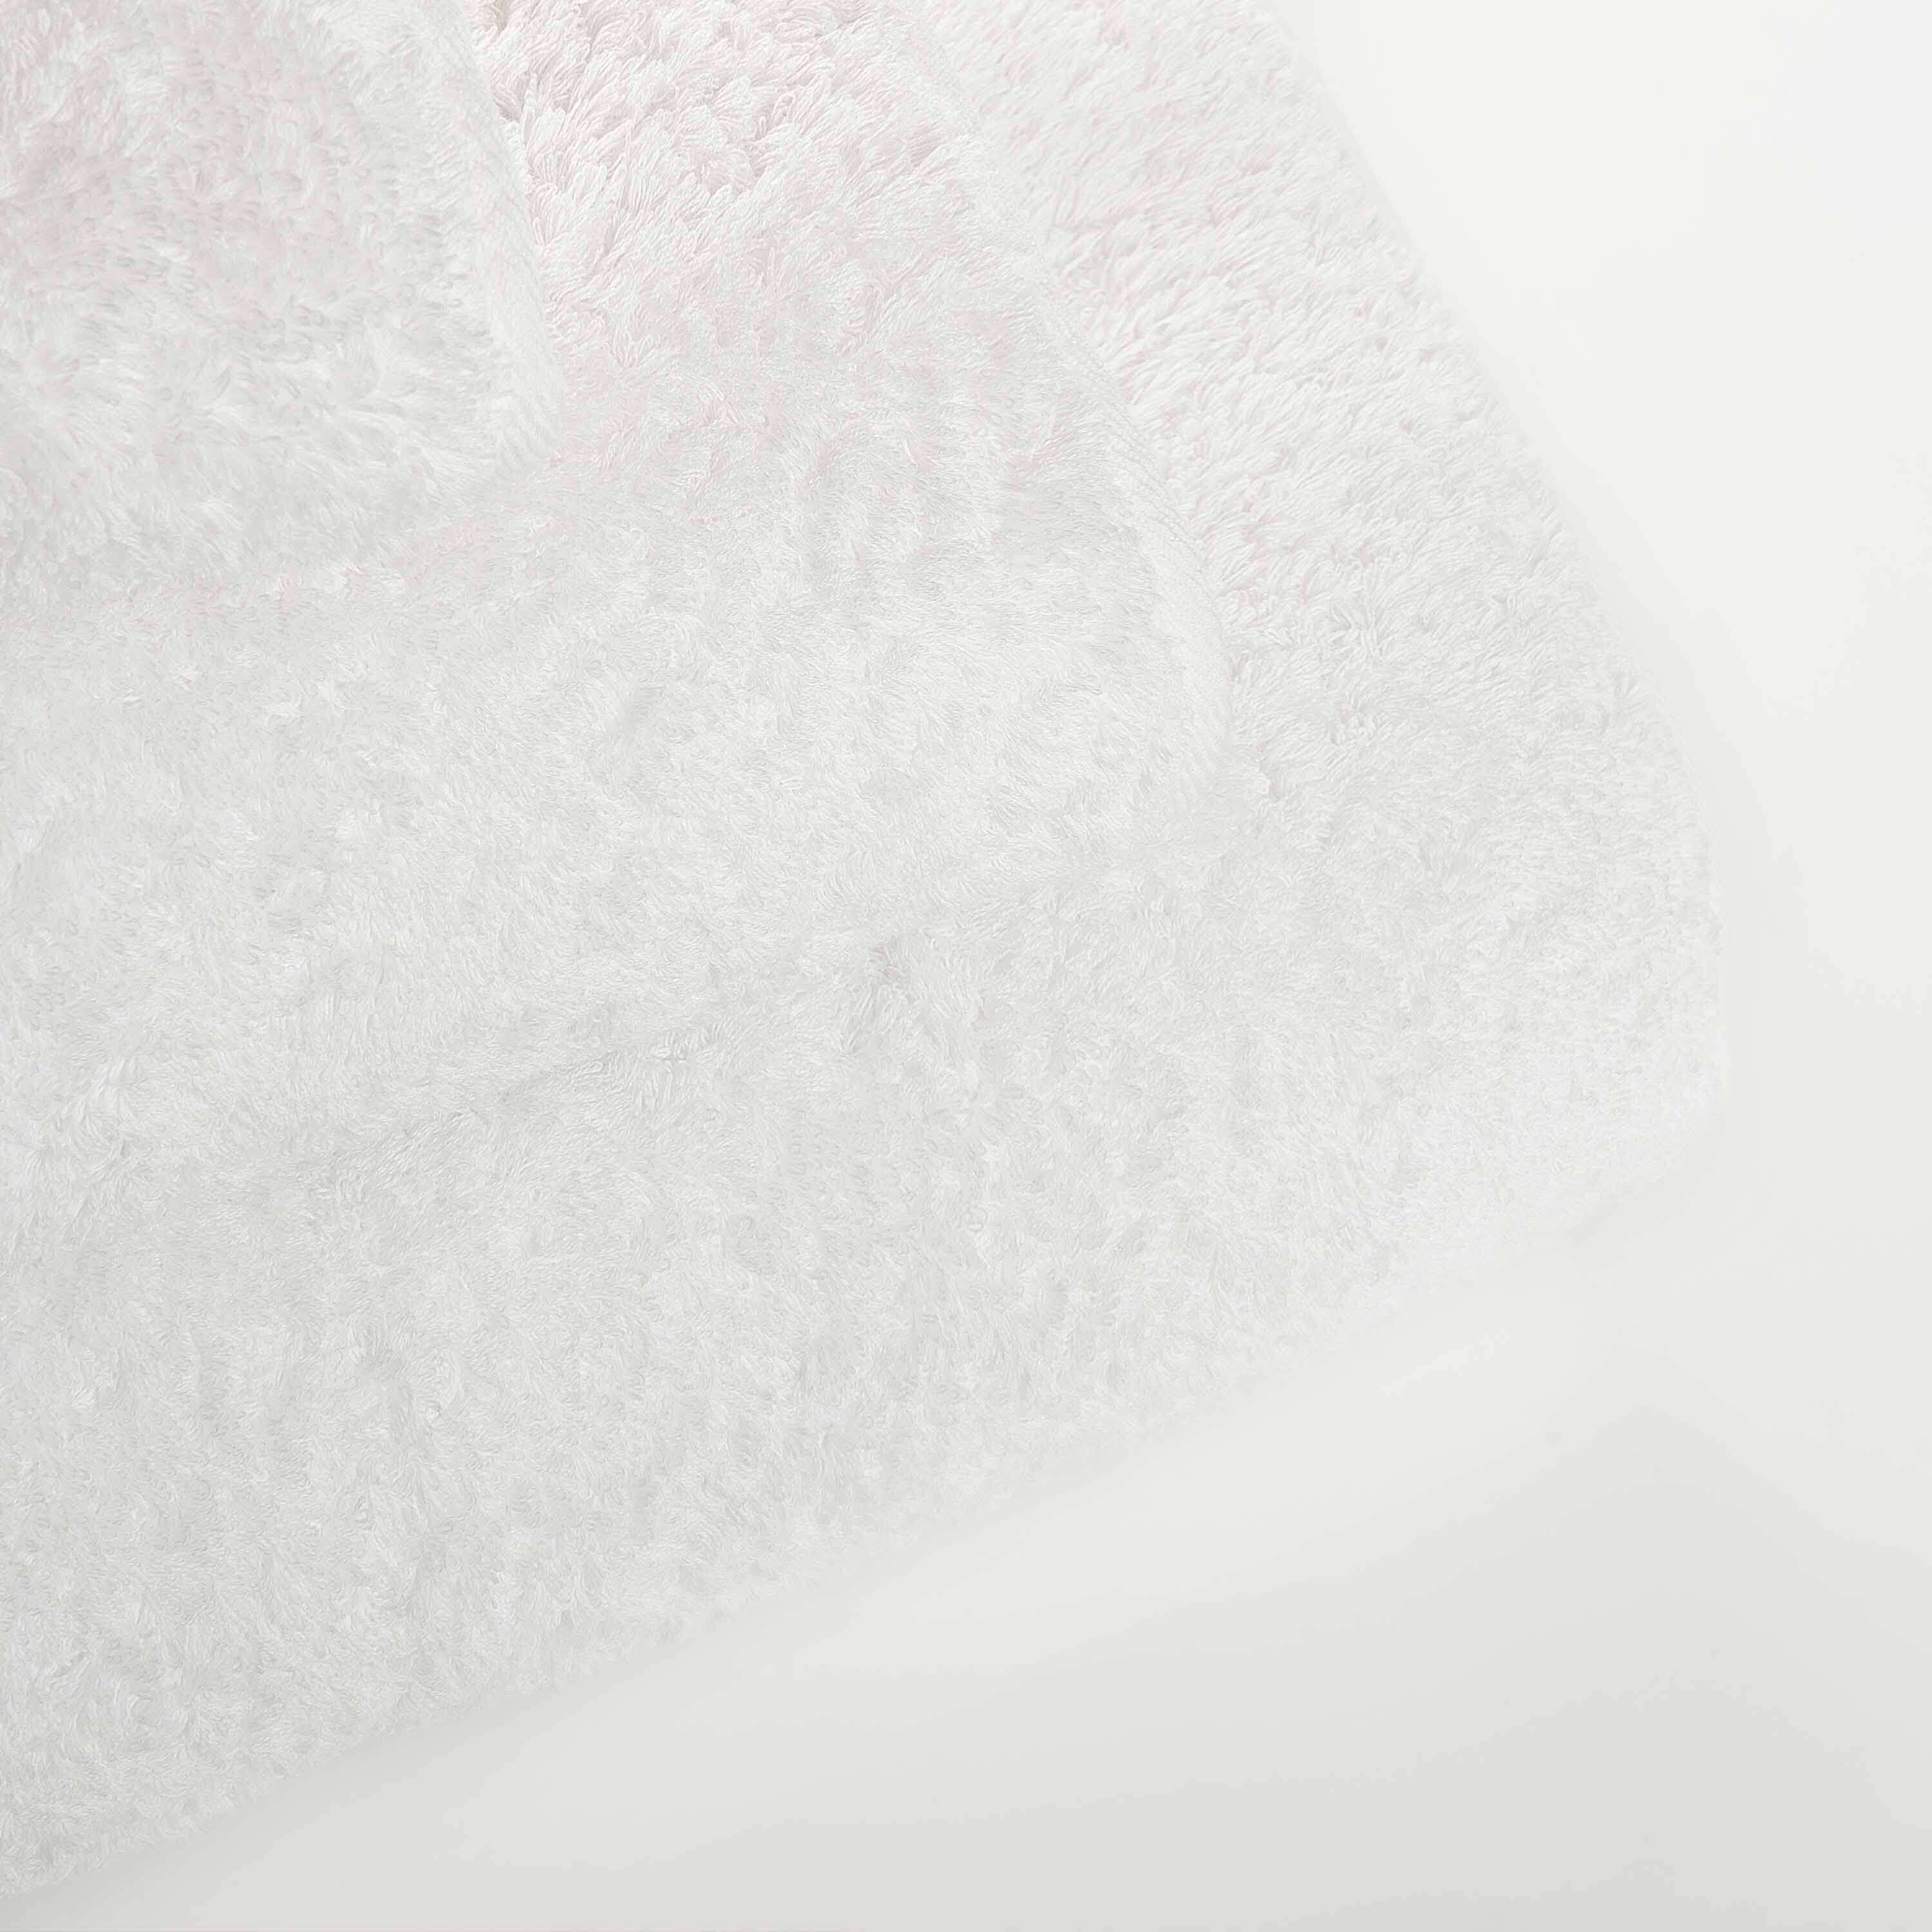 Элитное полотенце Egoist Range White ☞ Размер: 105 x 180 см